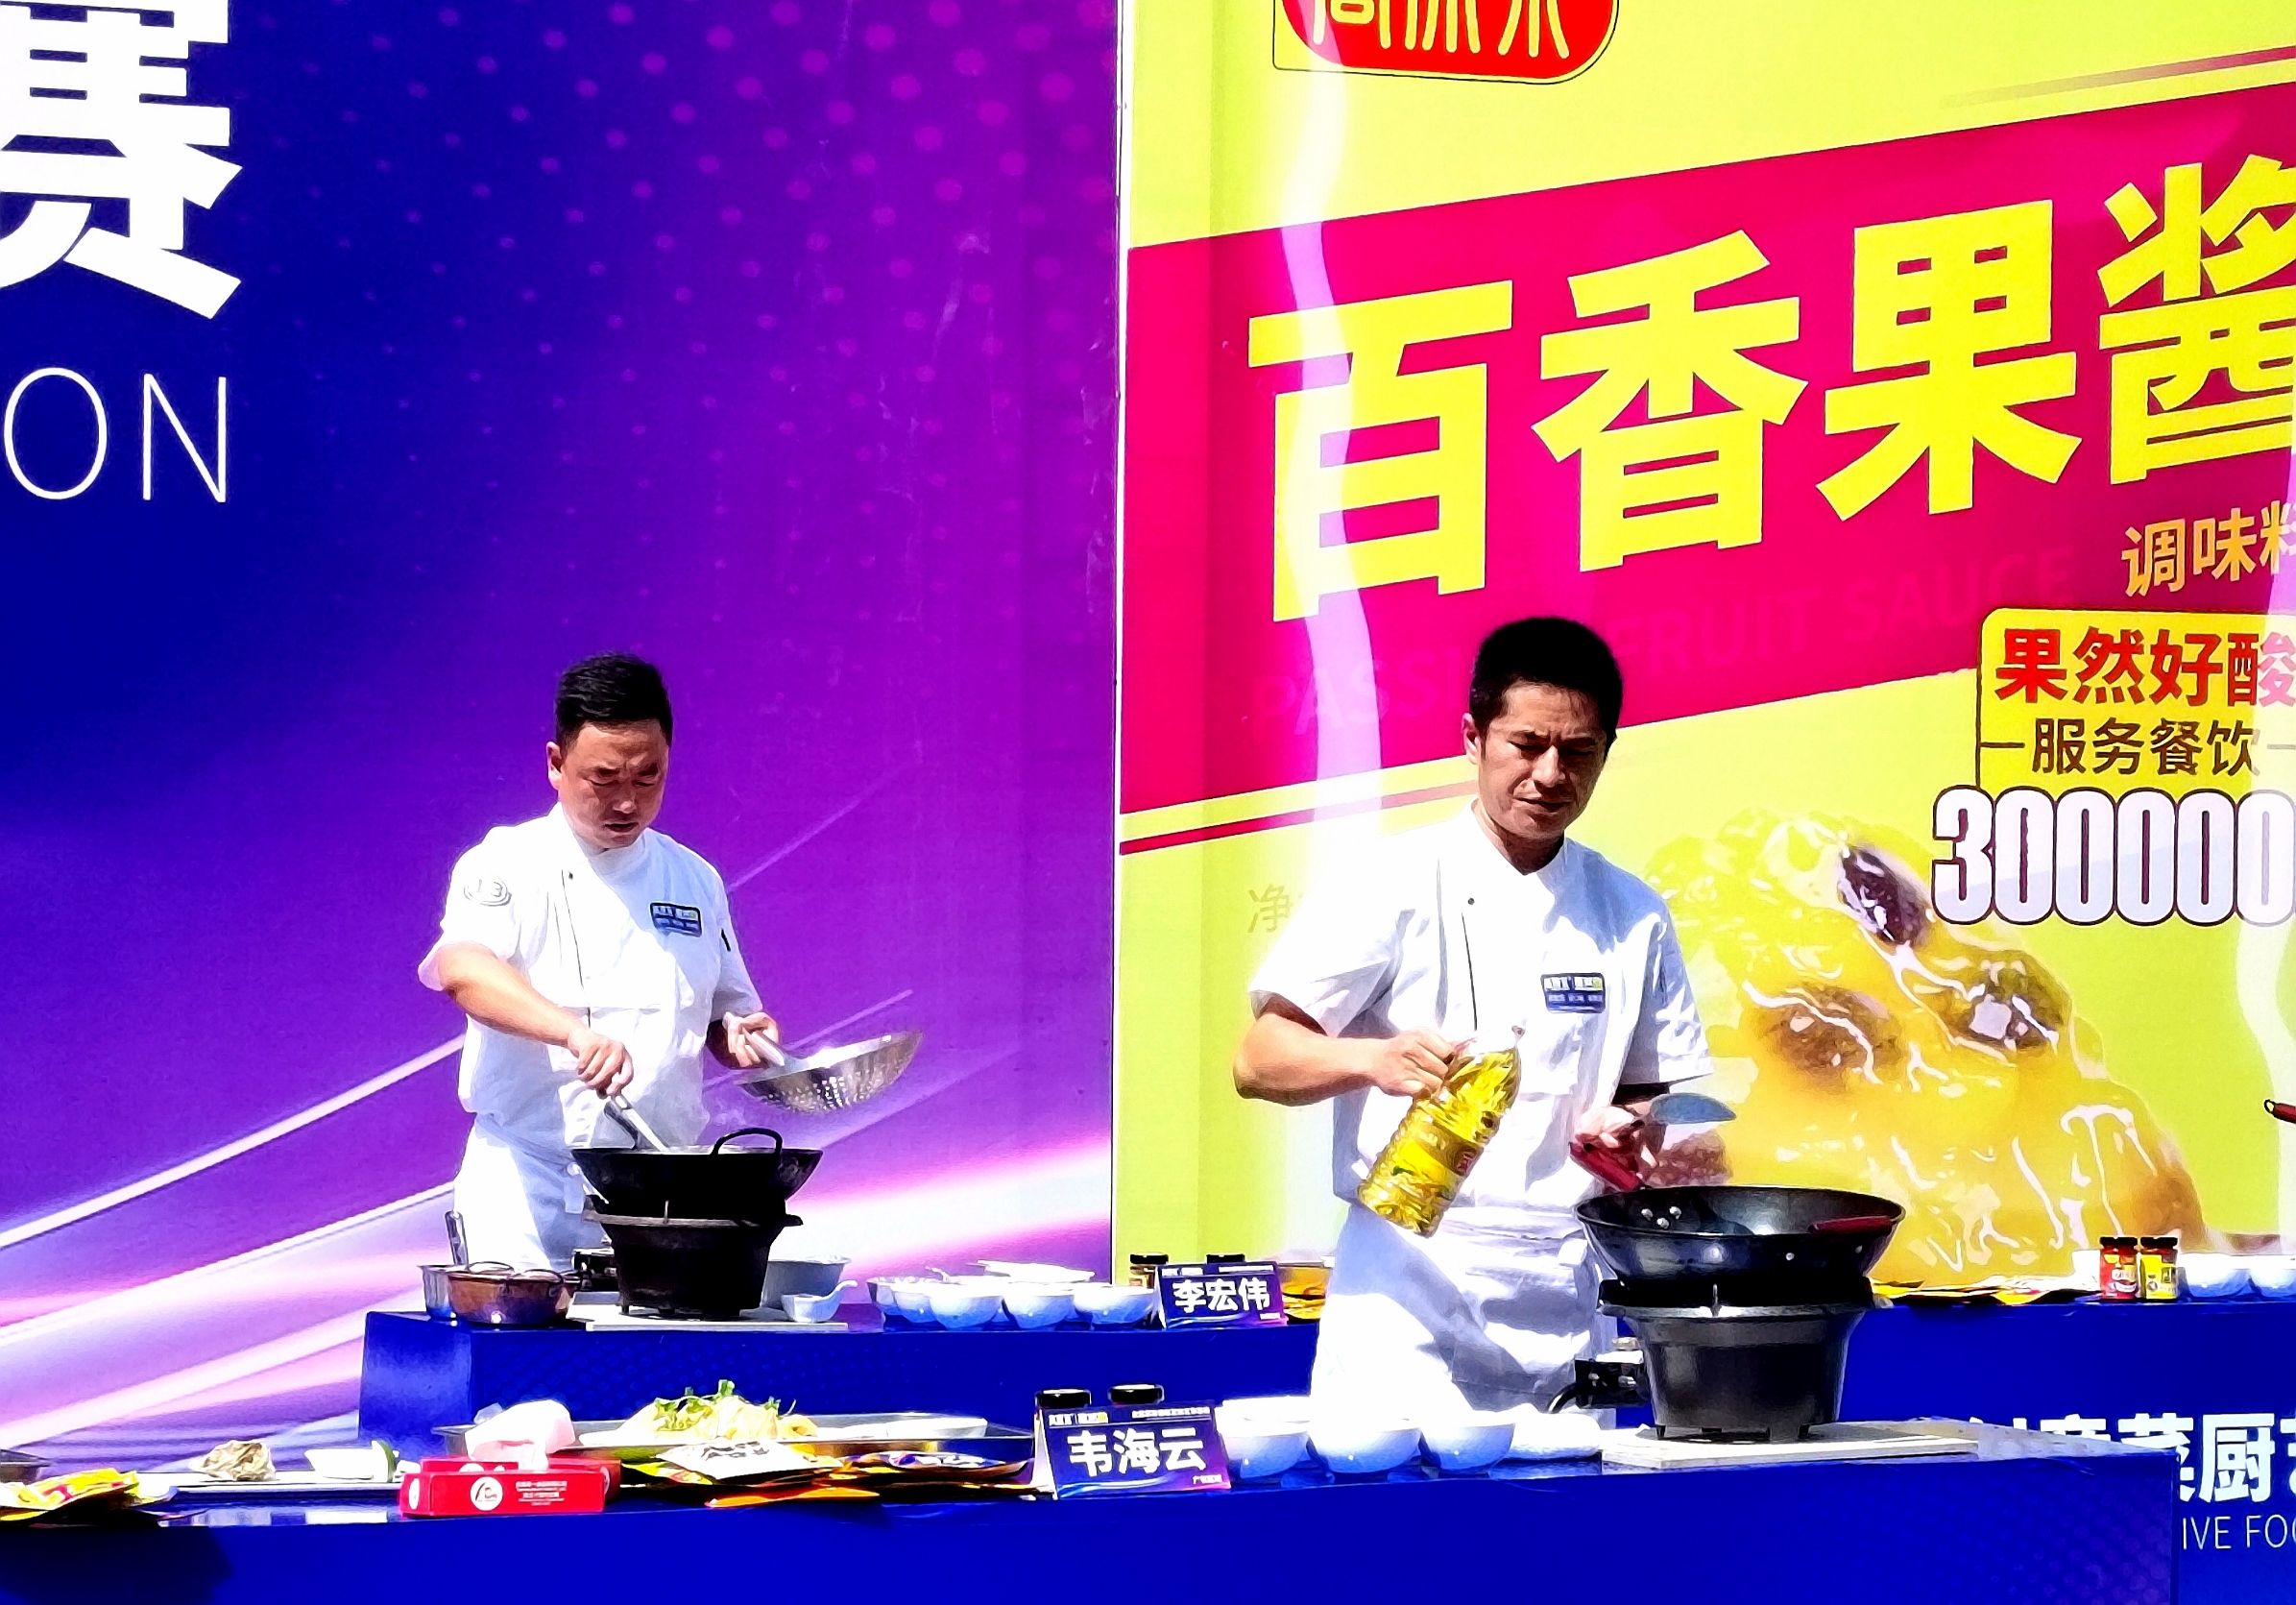 全国果酸创意菜厨艺争霸赛昨日在江川举行